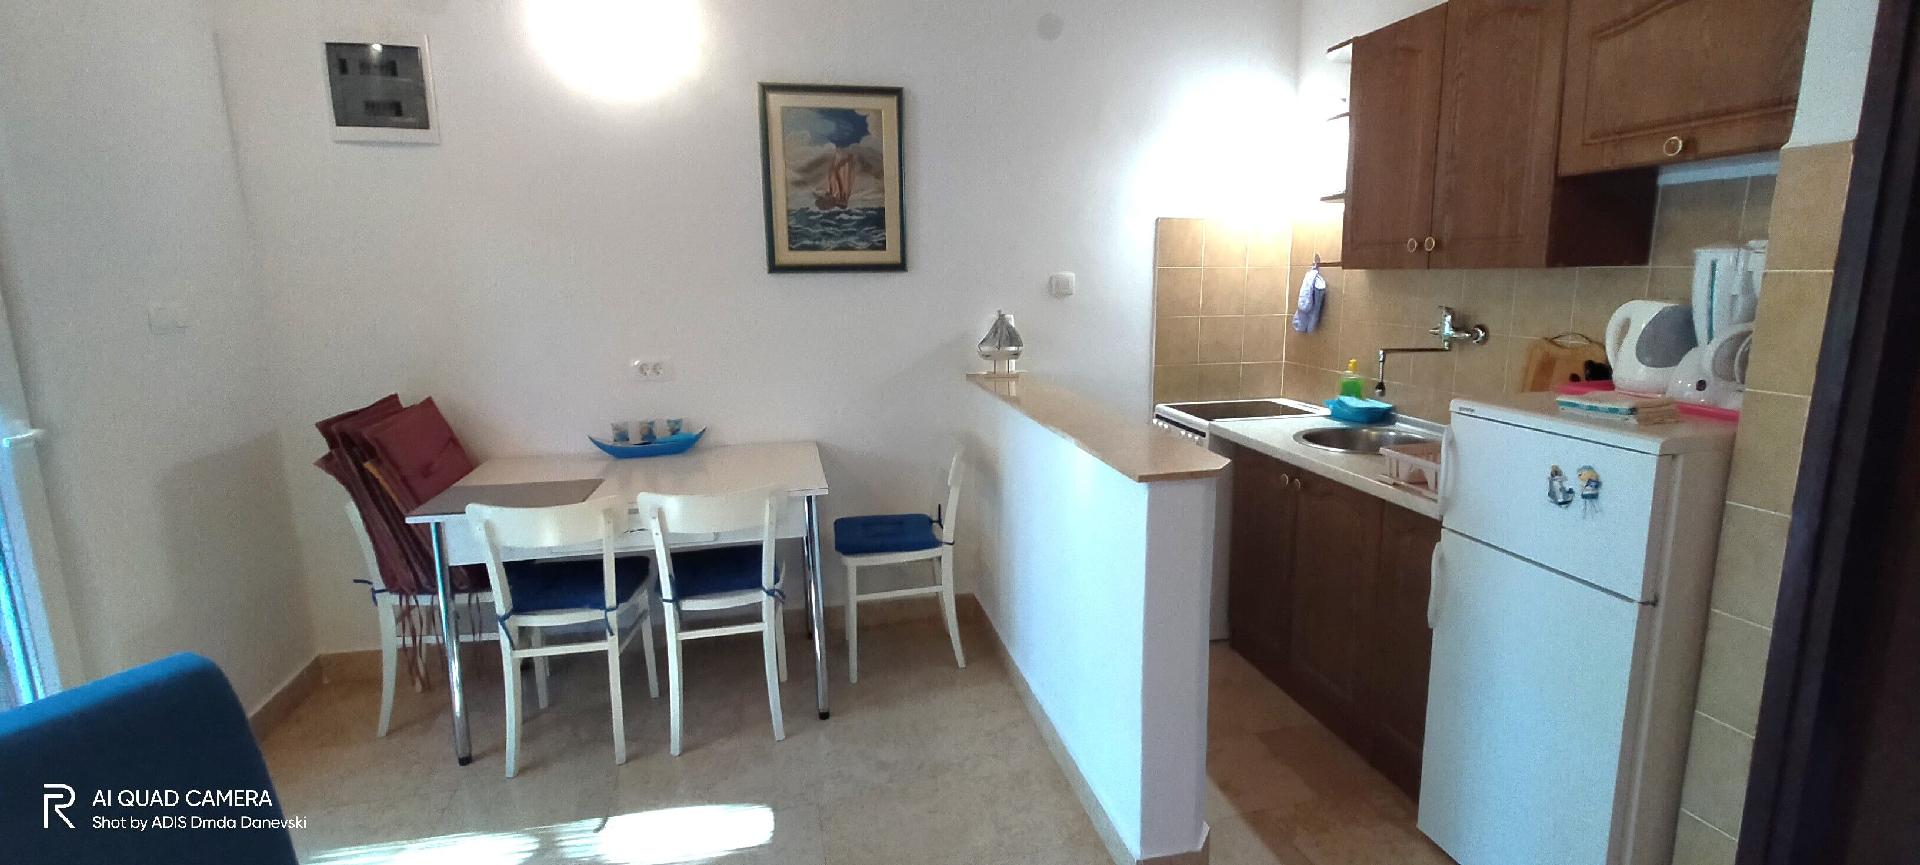 Ferienwohnung für 2 Personen ca. 32 m² i Ferienhaus in Istrien